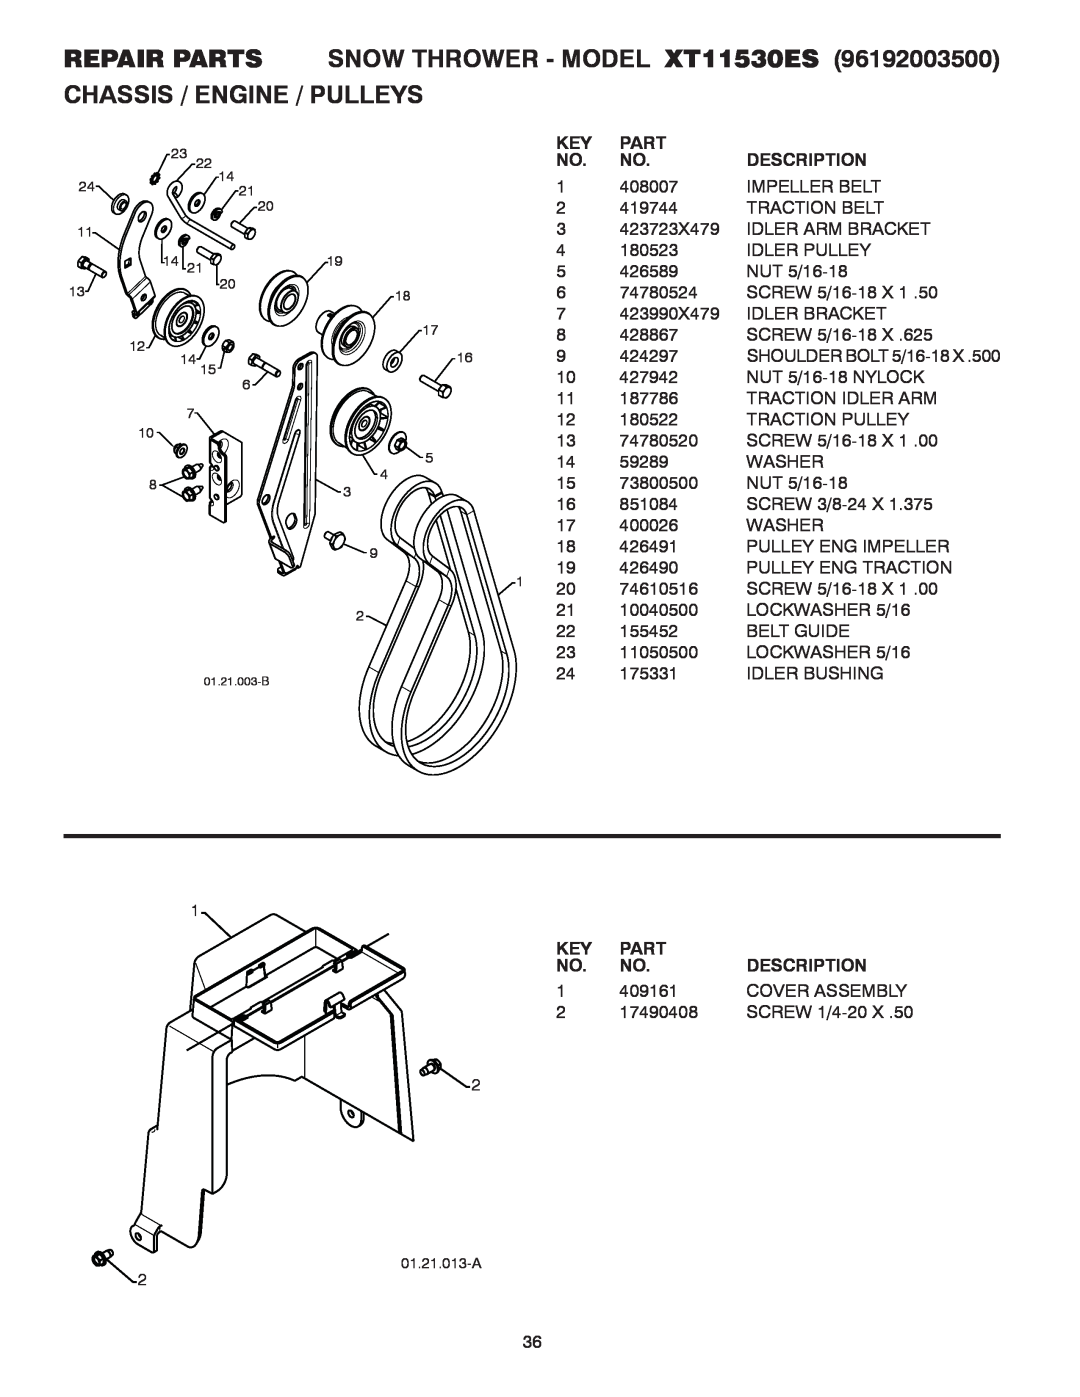 Poulan 428861, 96192003500 REPAIR PARTS SNOW THROWER - MODEL XT11530ES, Chassis / Engine / Pulleys, Part, Description 